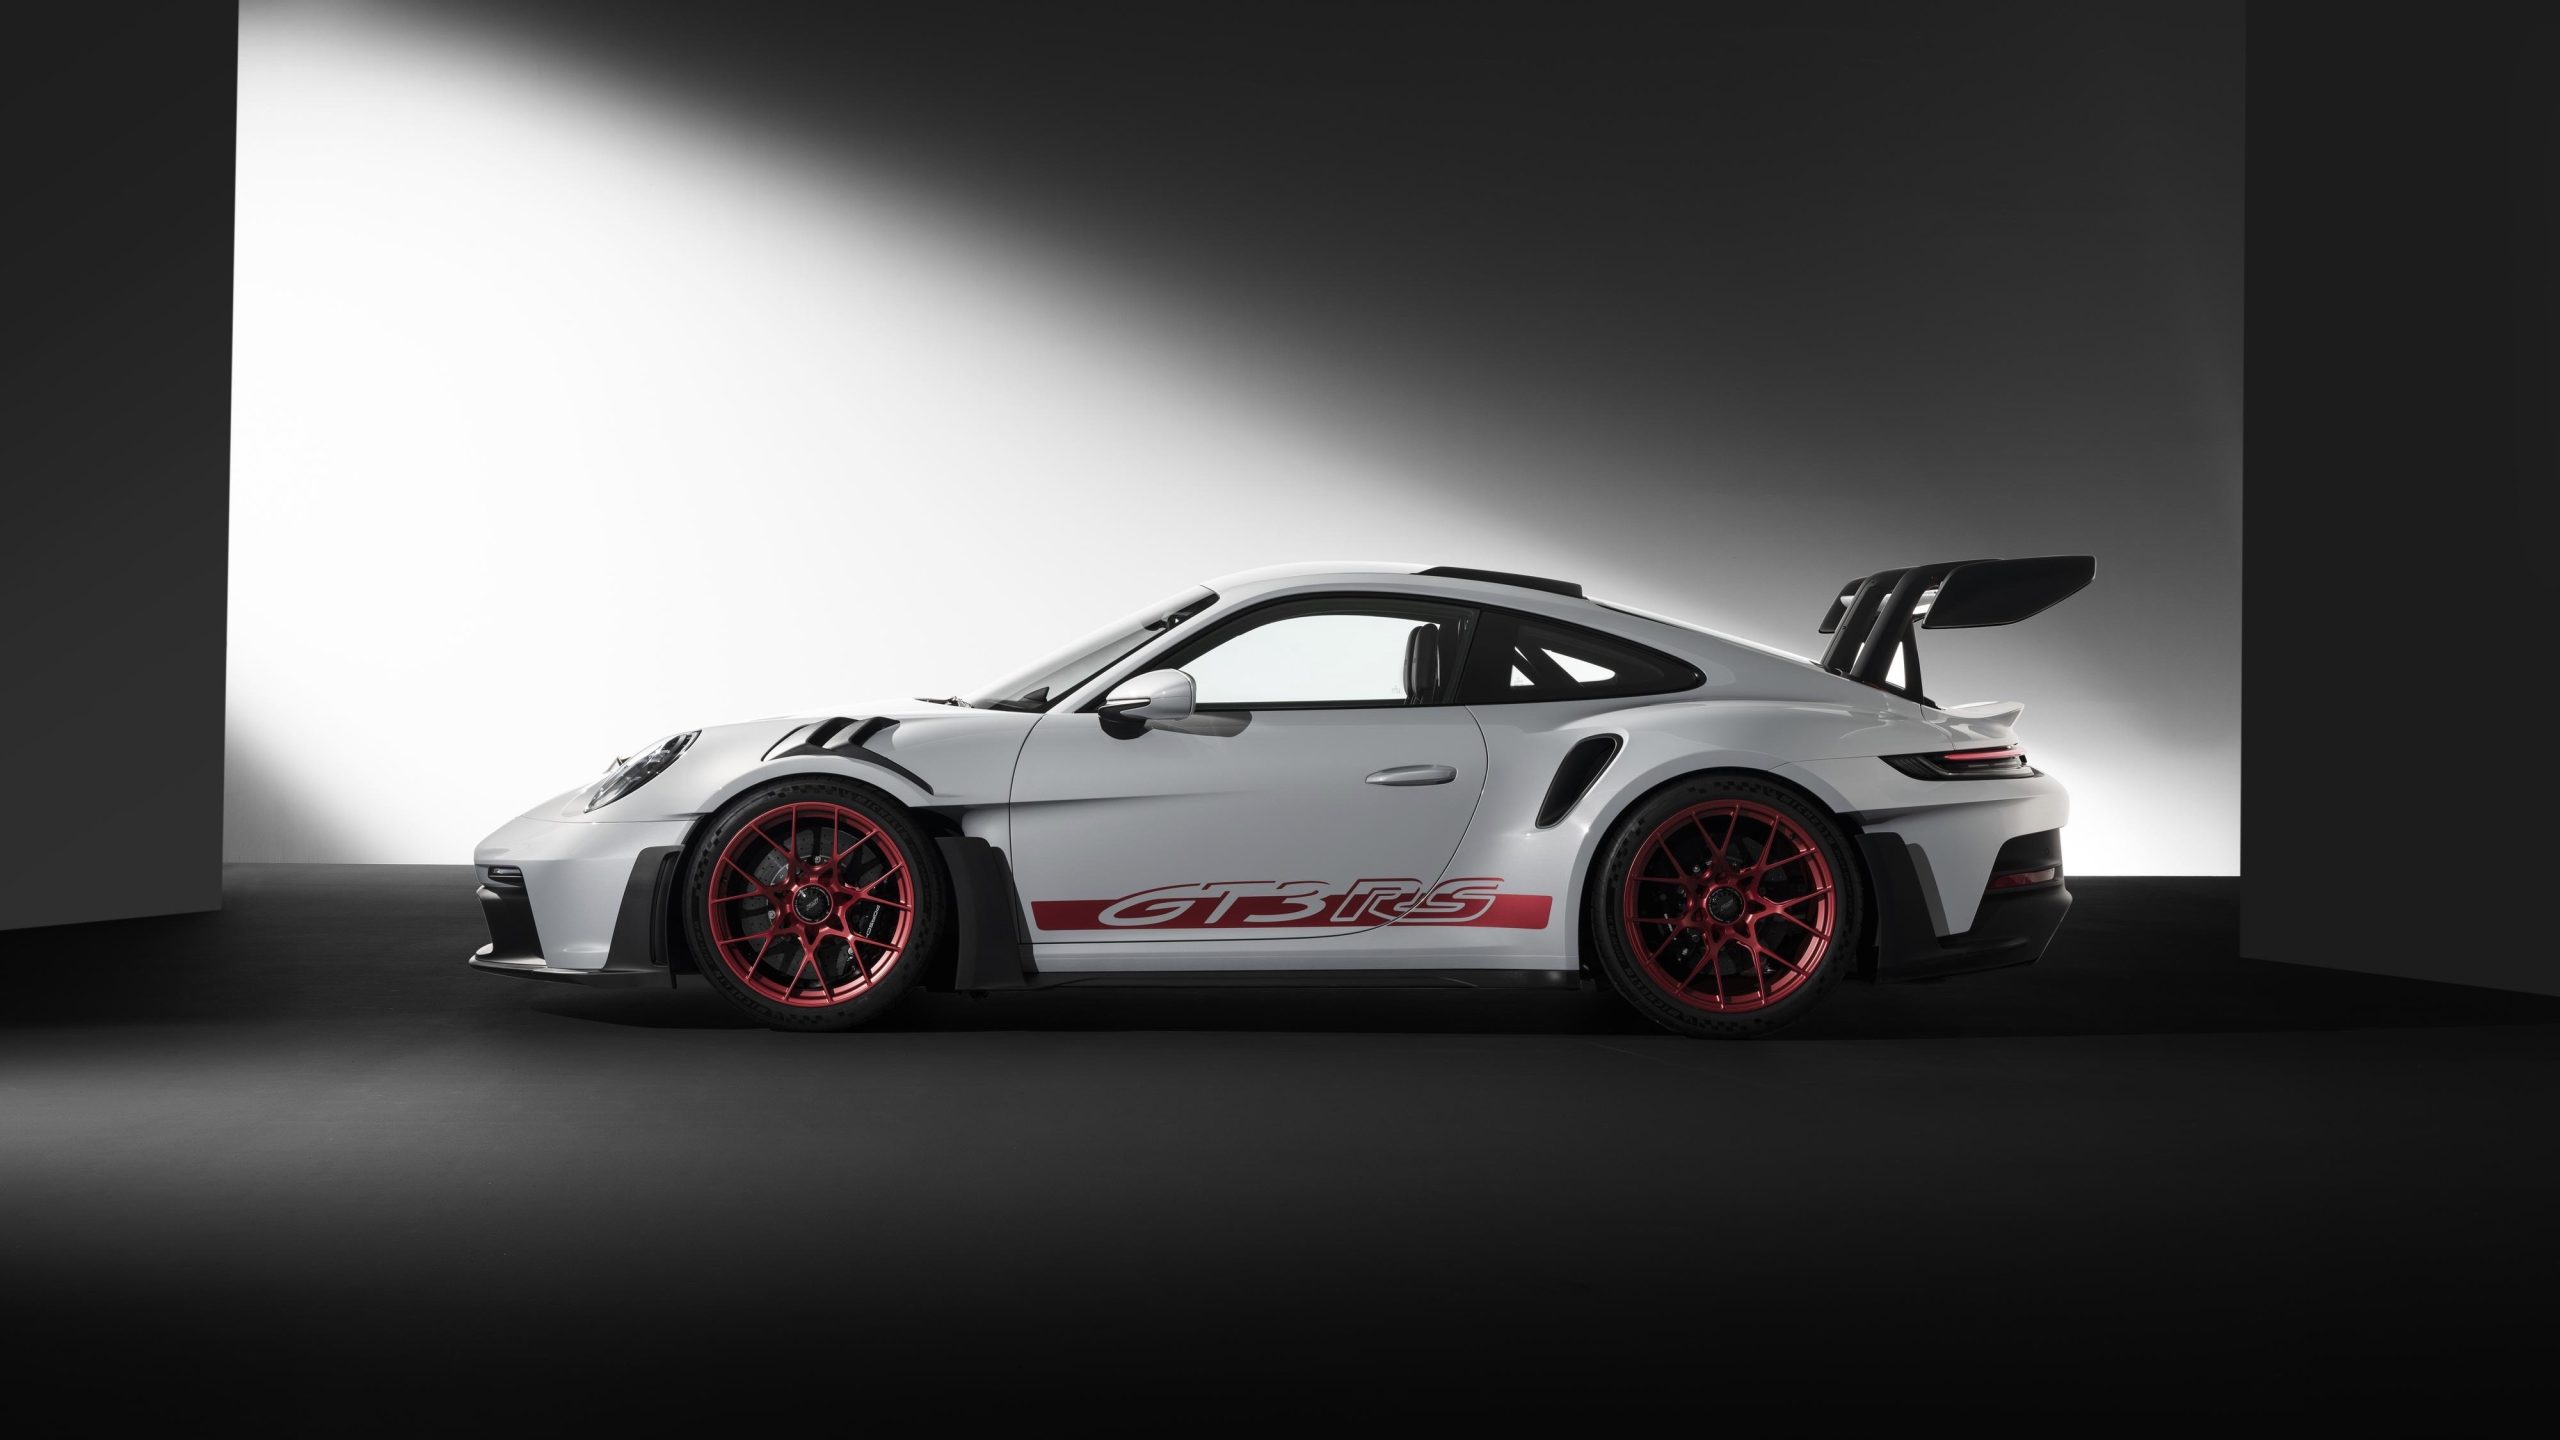 https://www.stuttcars.com/wp-content/uploads/2022/10/Porsche-911-GT3-RS-992-25-scaled.jpeg